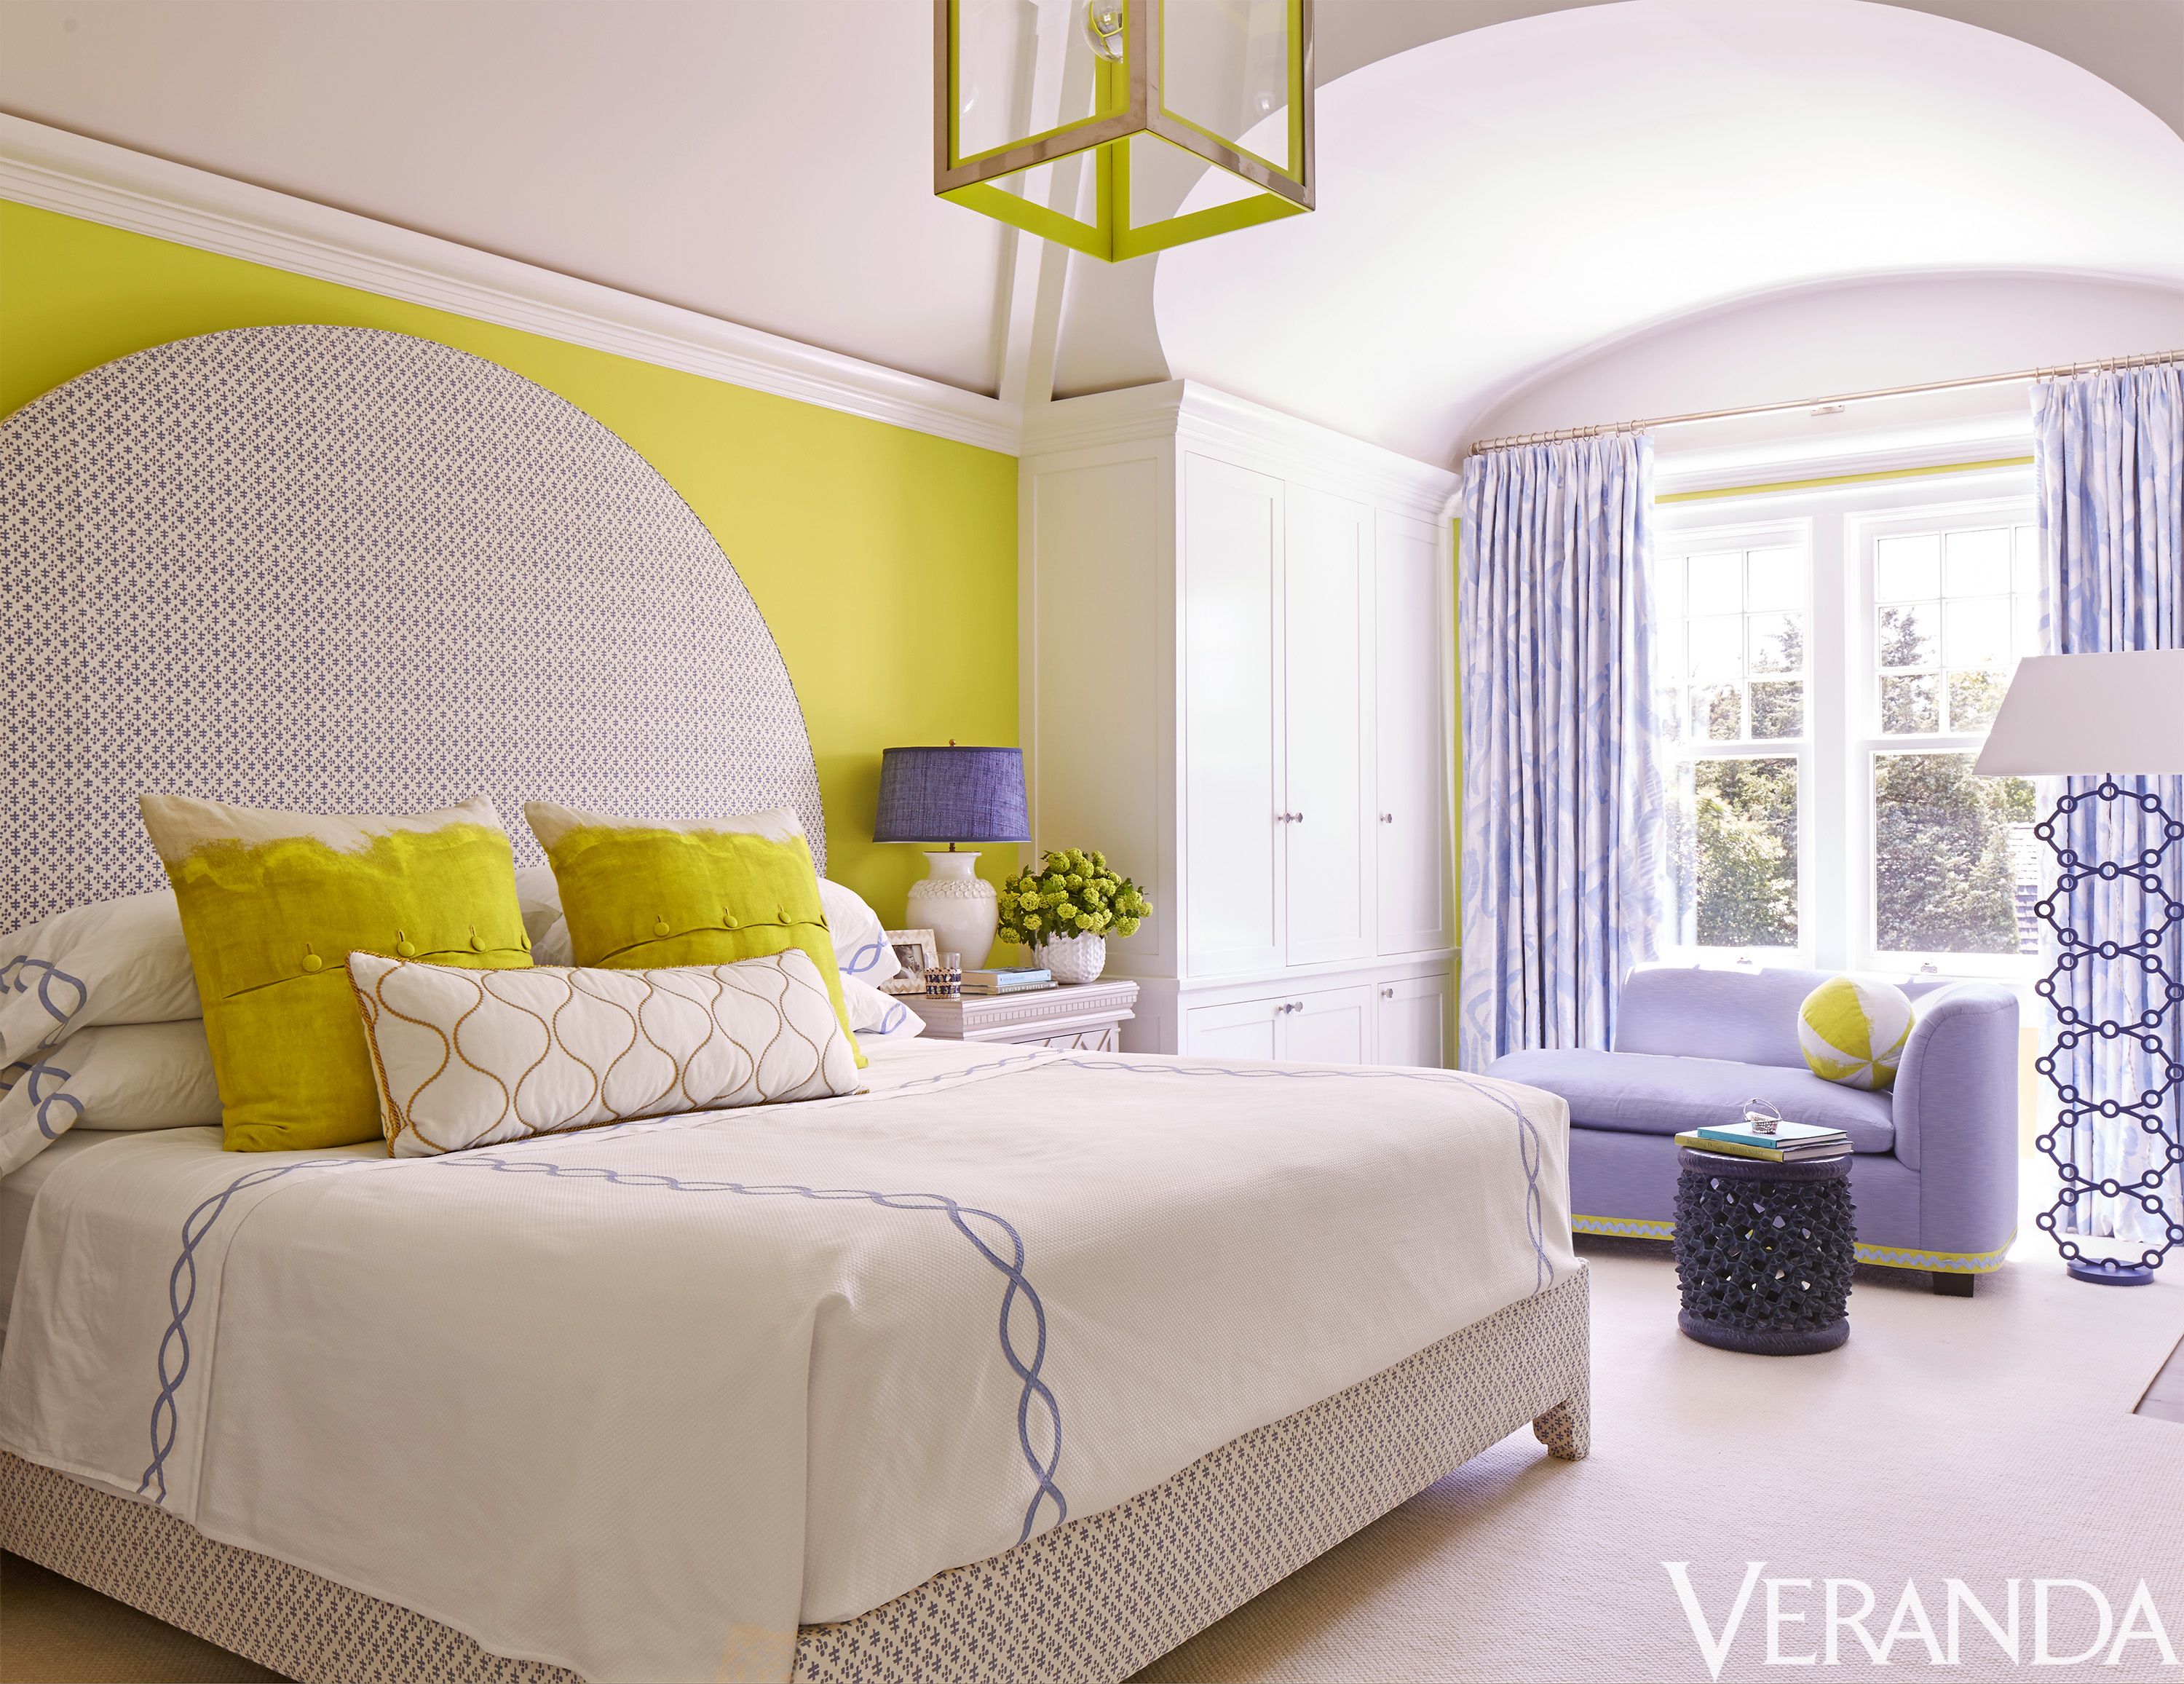 30 Best Bedroom Ideas Beautiful Bedroom Decorating Tips